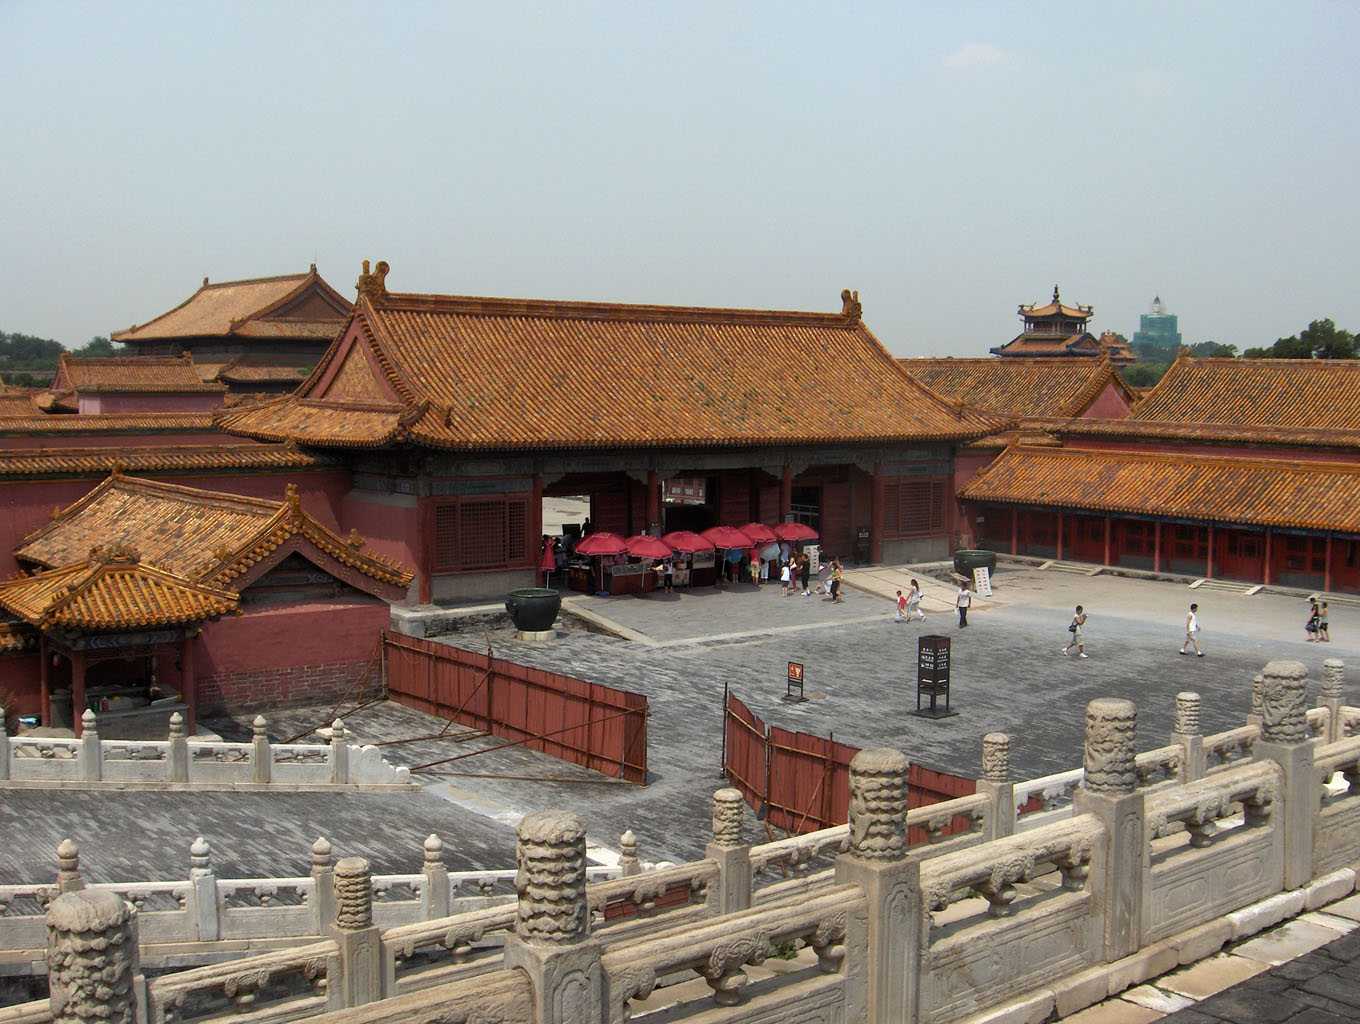 Une vue partielle de la cité Interdite à Pékin (le palais de la Pureté céleste), le 4 août 2005